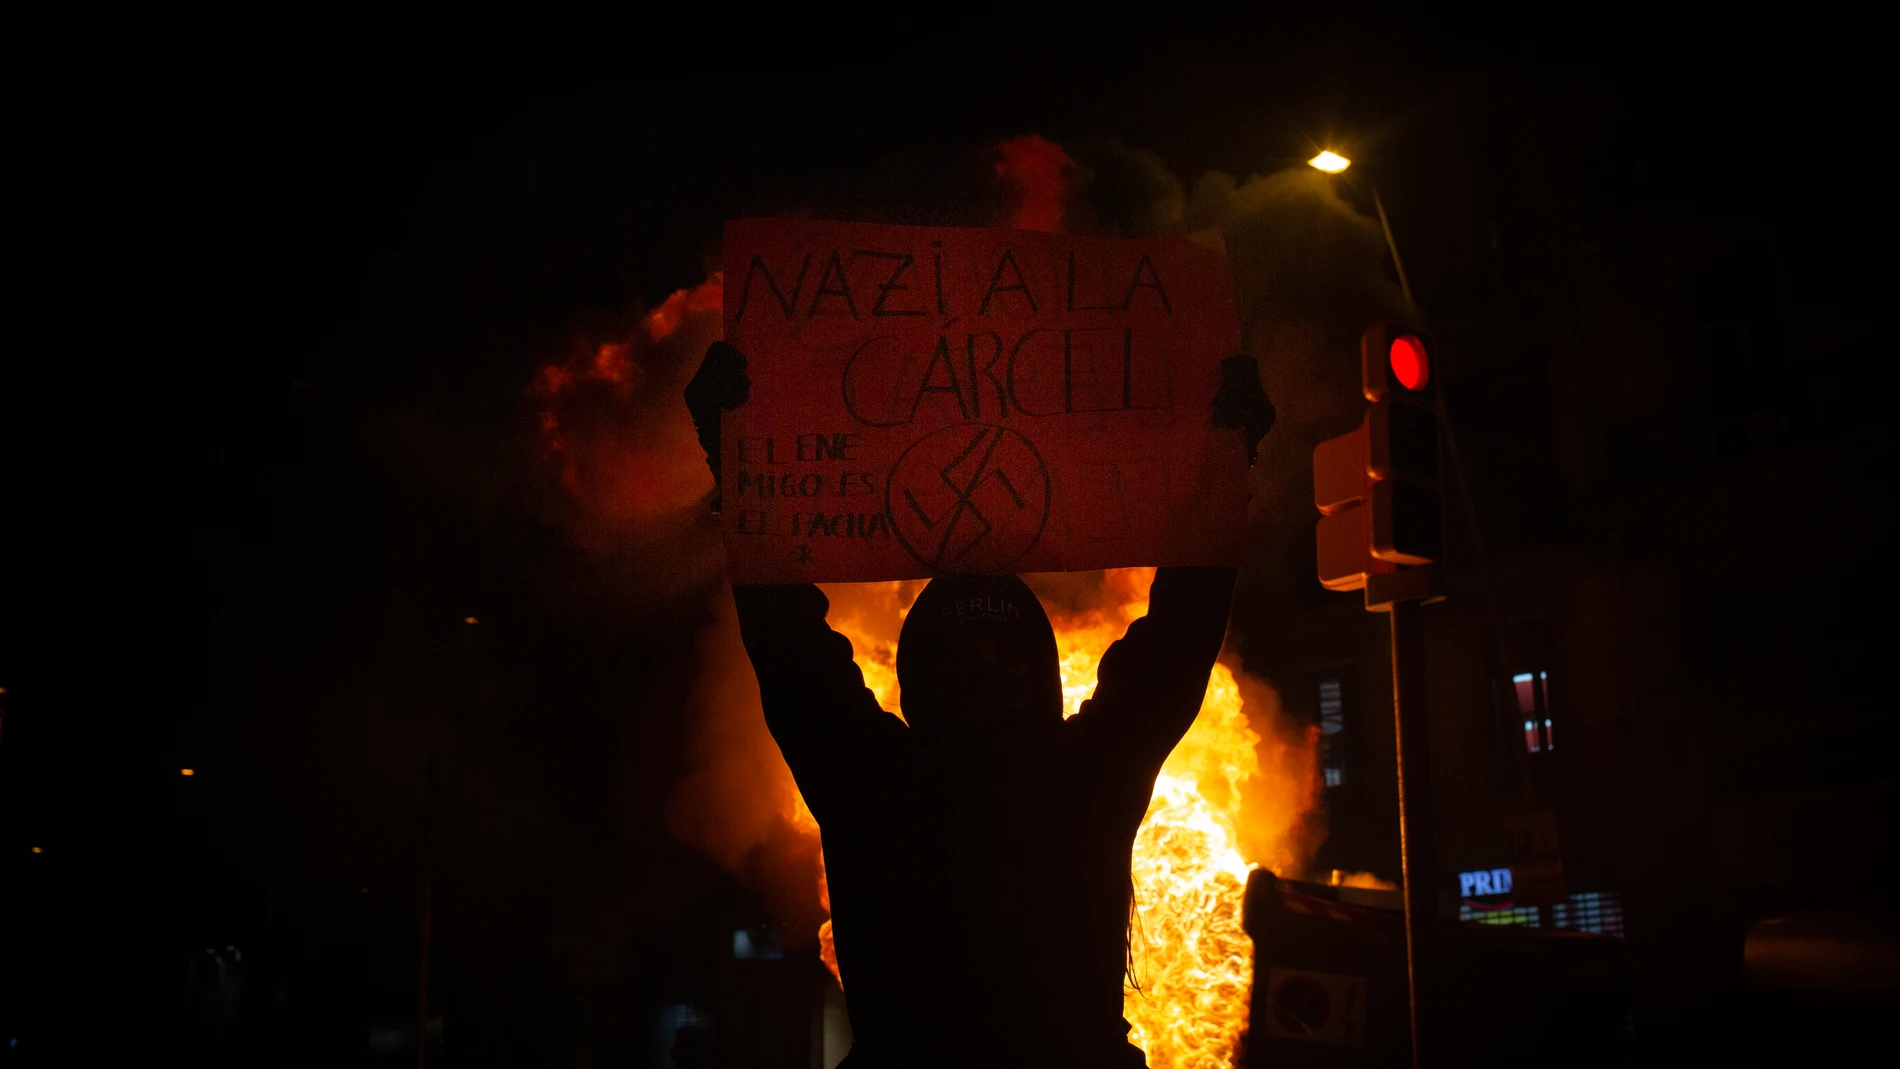 Uno de los manifestantes que apoyan a Pablo Hasel con una pancarta durante los disturbios en Barcelona (España), a 17 de febrero de 2021. David Zorrakino / Europa Press17/02/2021